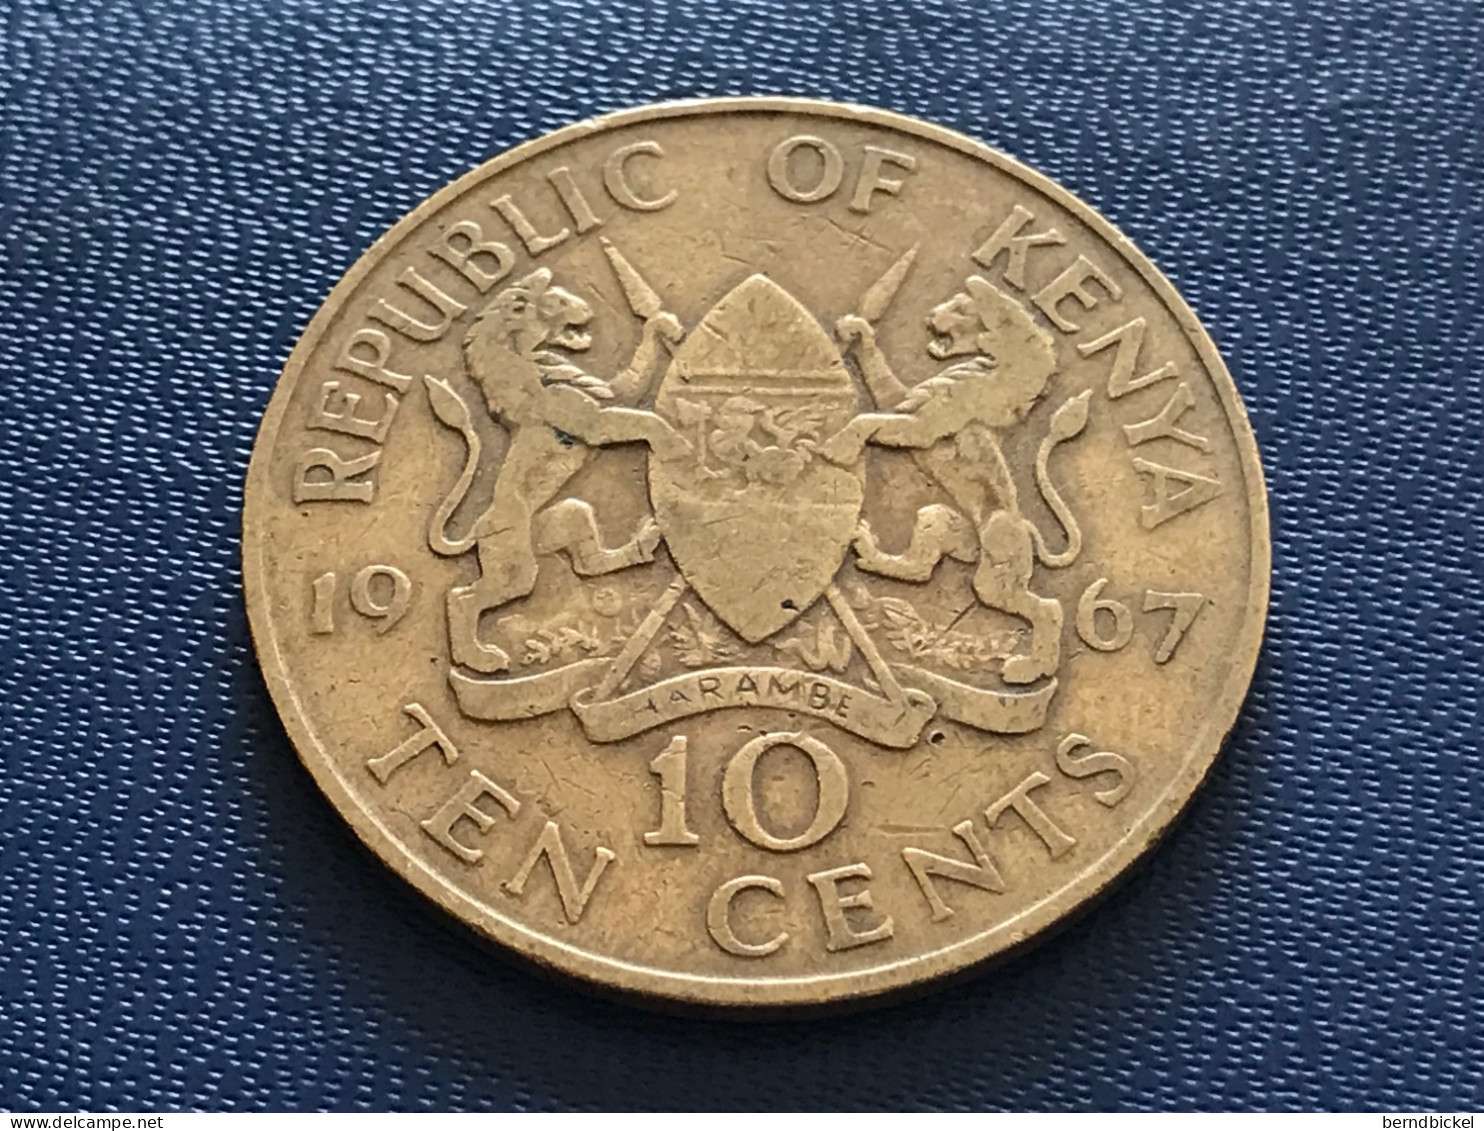 Münze Münzen Umlaufmünze Kenia 10 Cents 1967 - Kenia